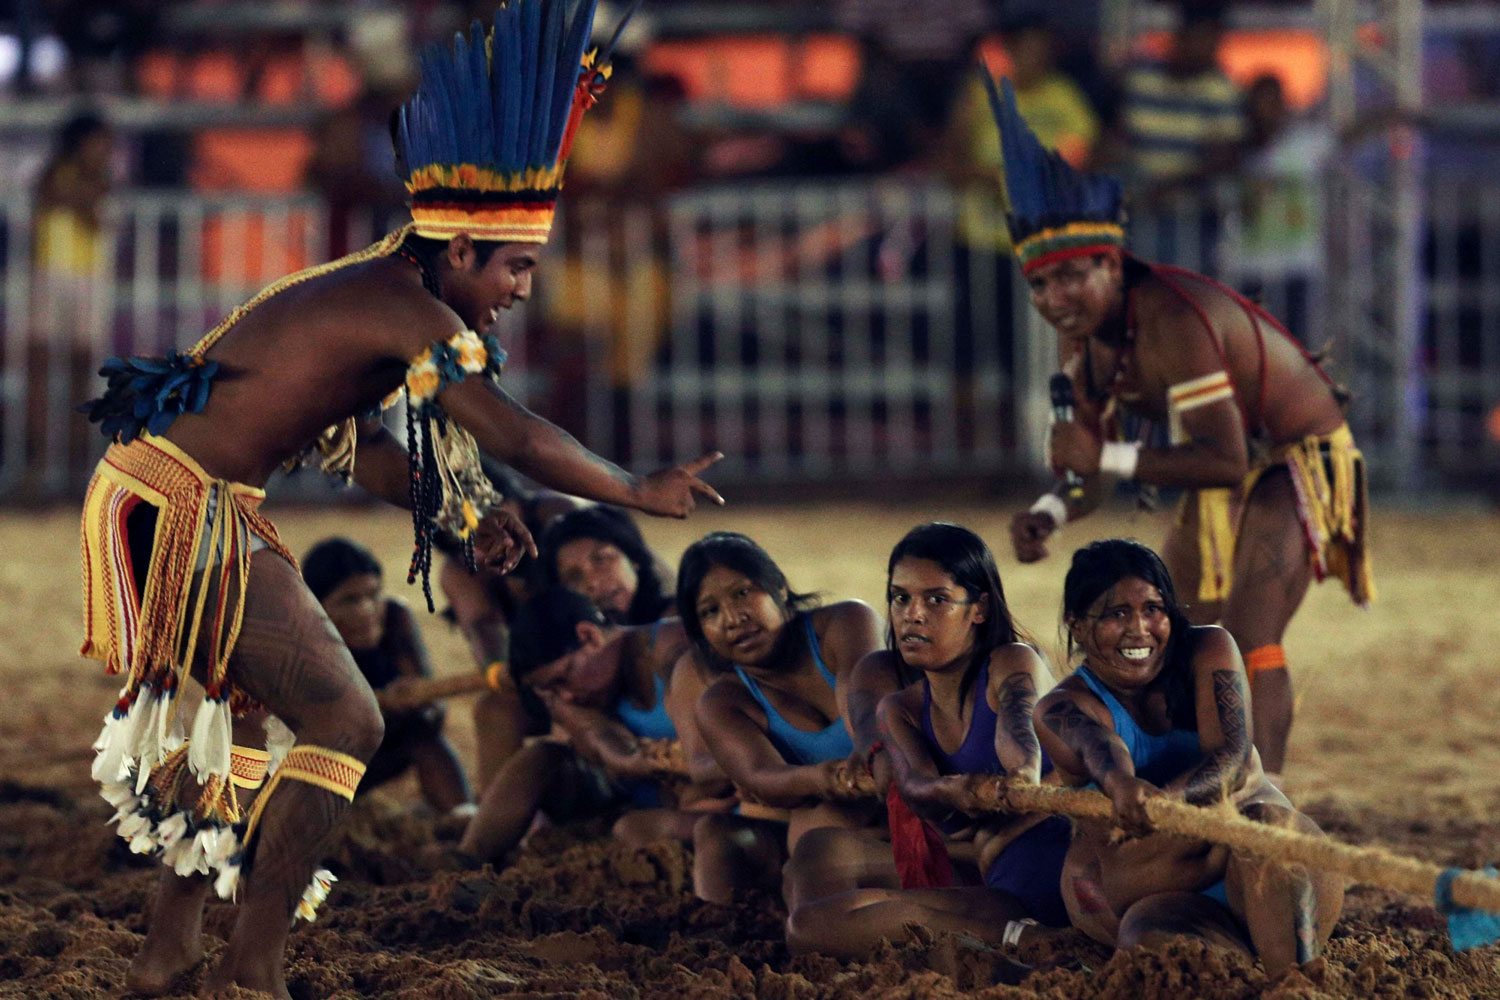 48 tribus indígenas participan en las competiciones. No quieren ganar sino divertirse.